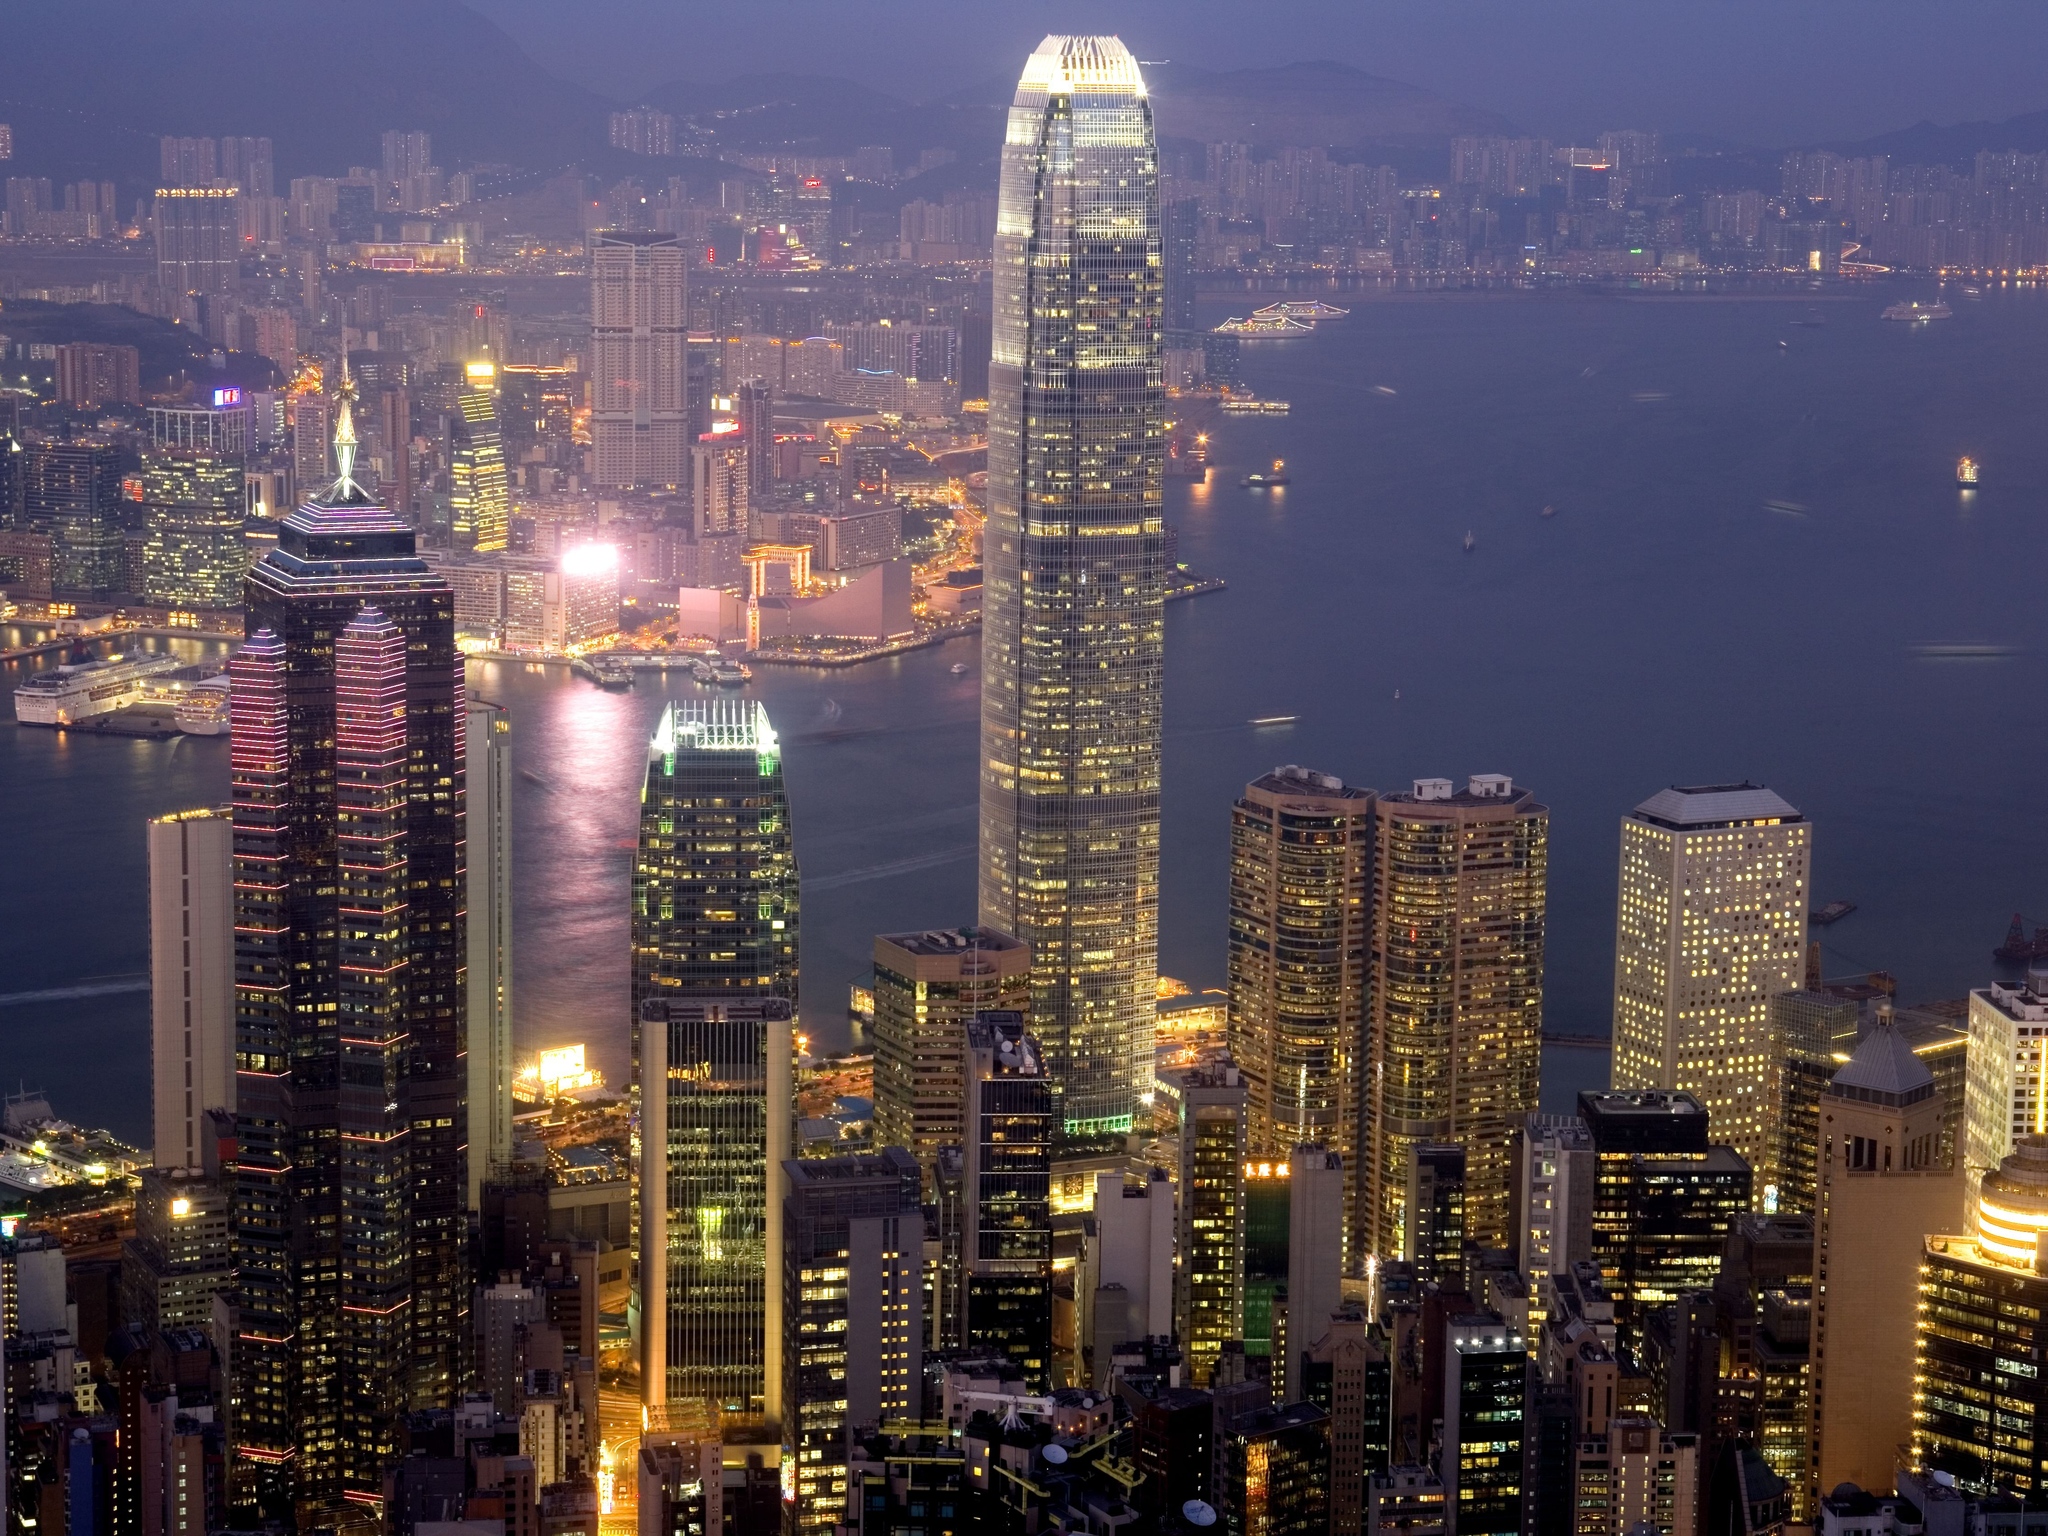 Hong Kong City Lights 4k Ultra HD Wallpaper